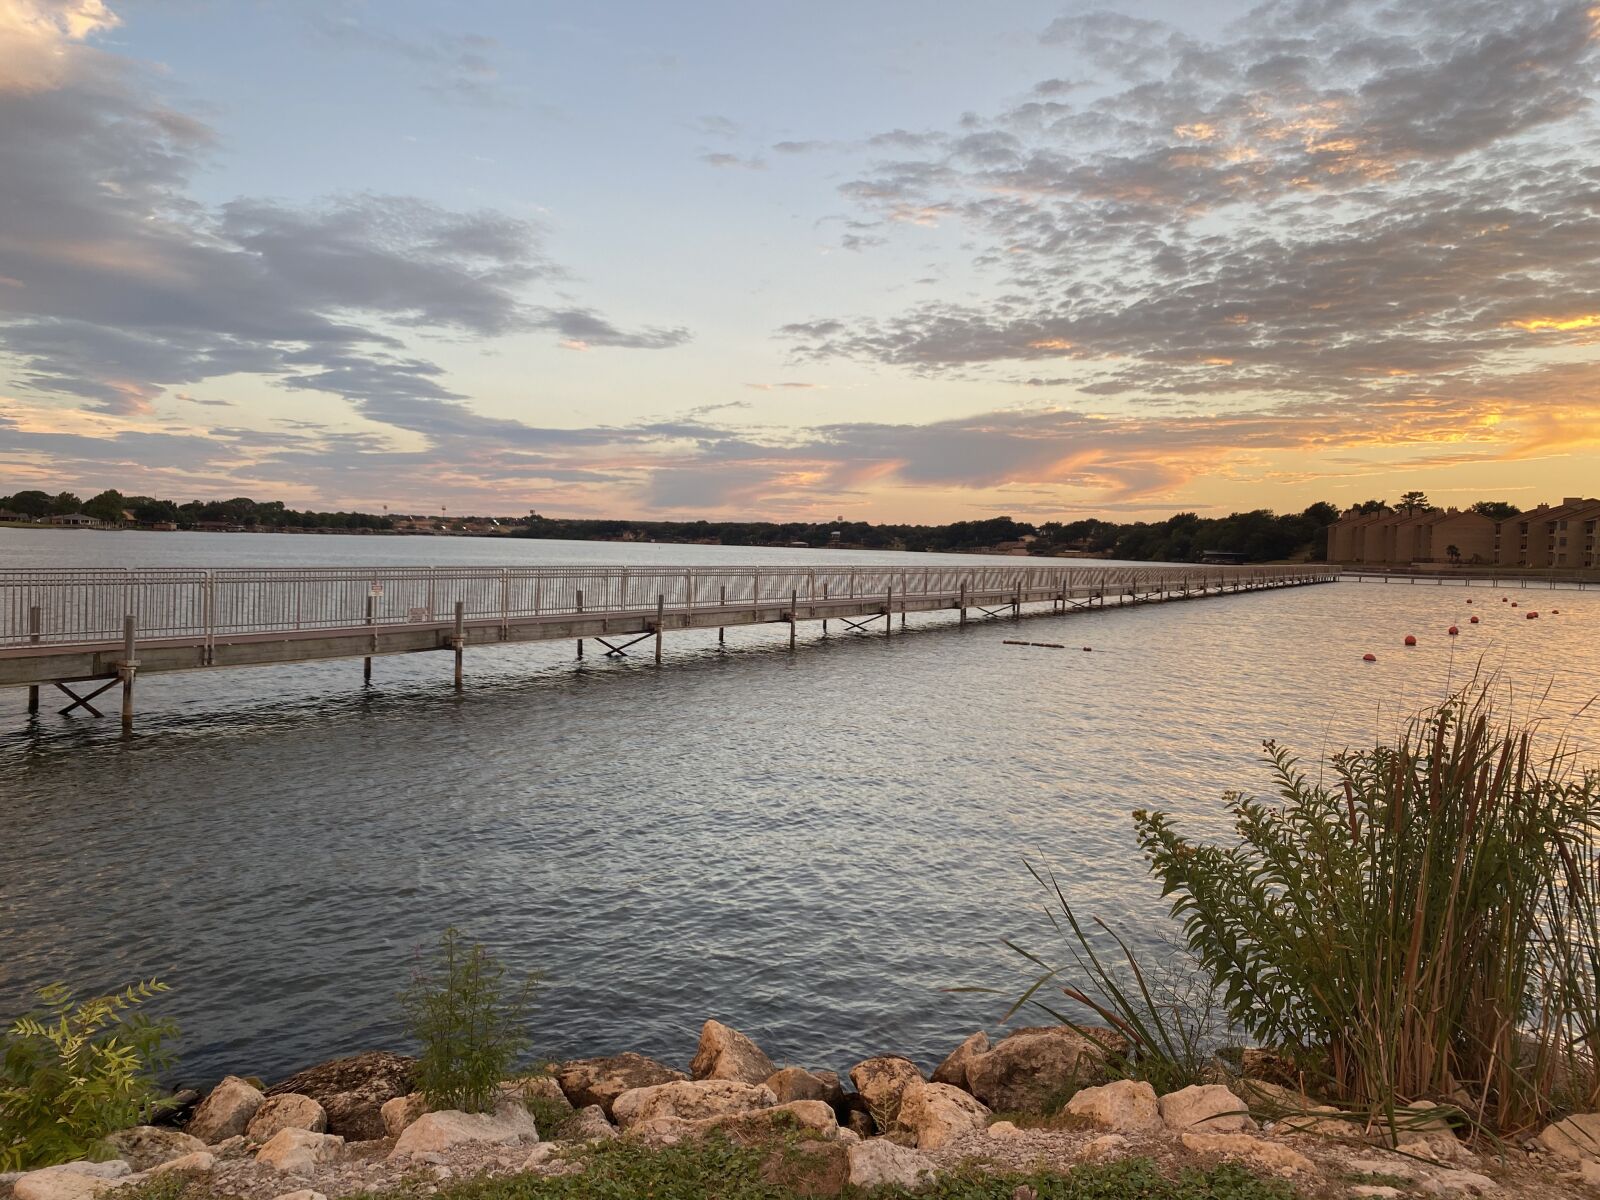 Apple iPhone 11 Pro sample photo. Sunset, texas sunset, lake photography